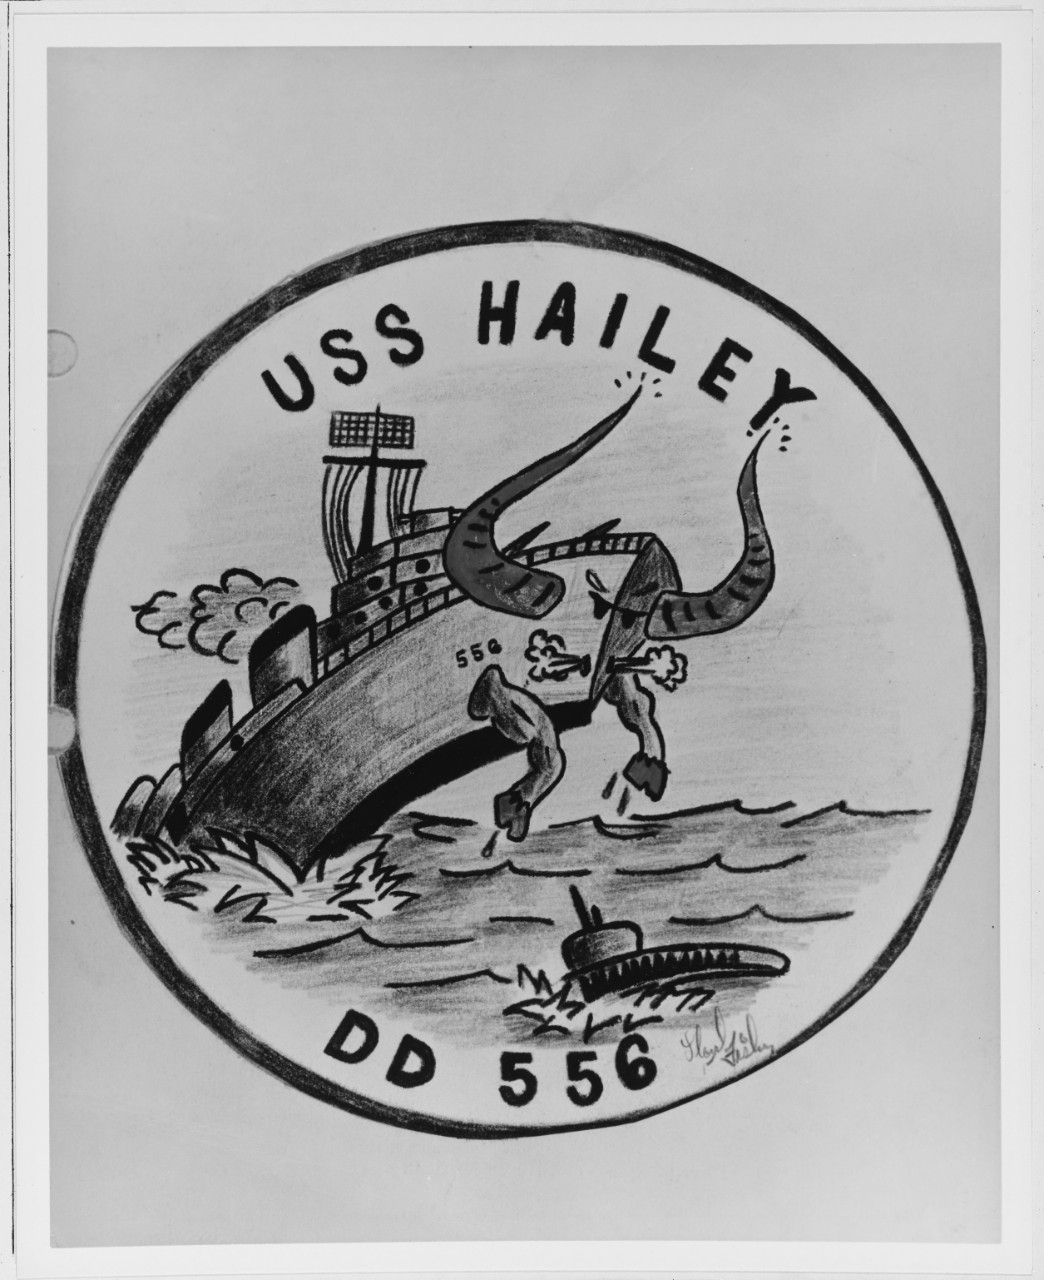 Insignia:  USS HAILEY (DD-556)